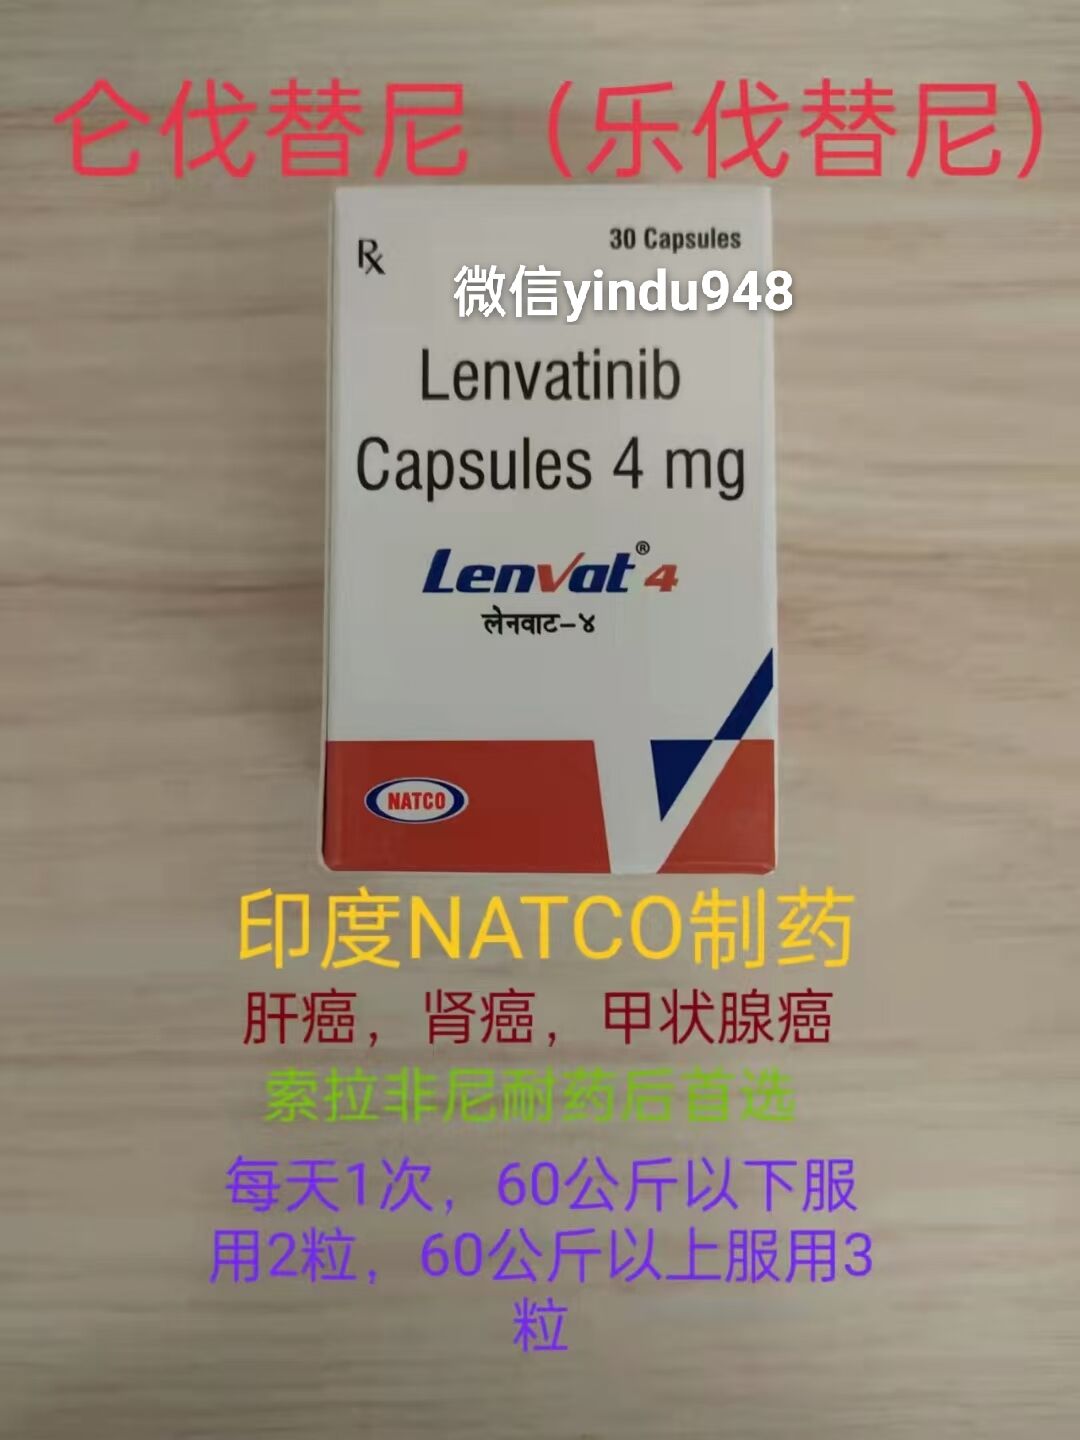 仑伐替尼更适用于治疗中国的肝癌患者？